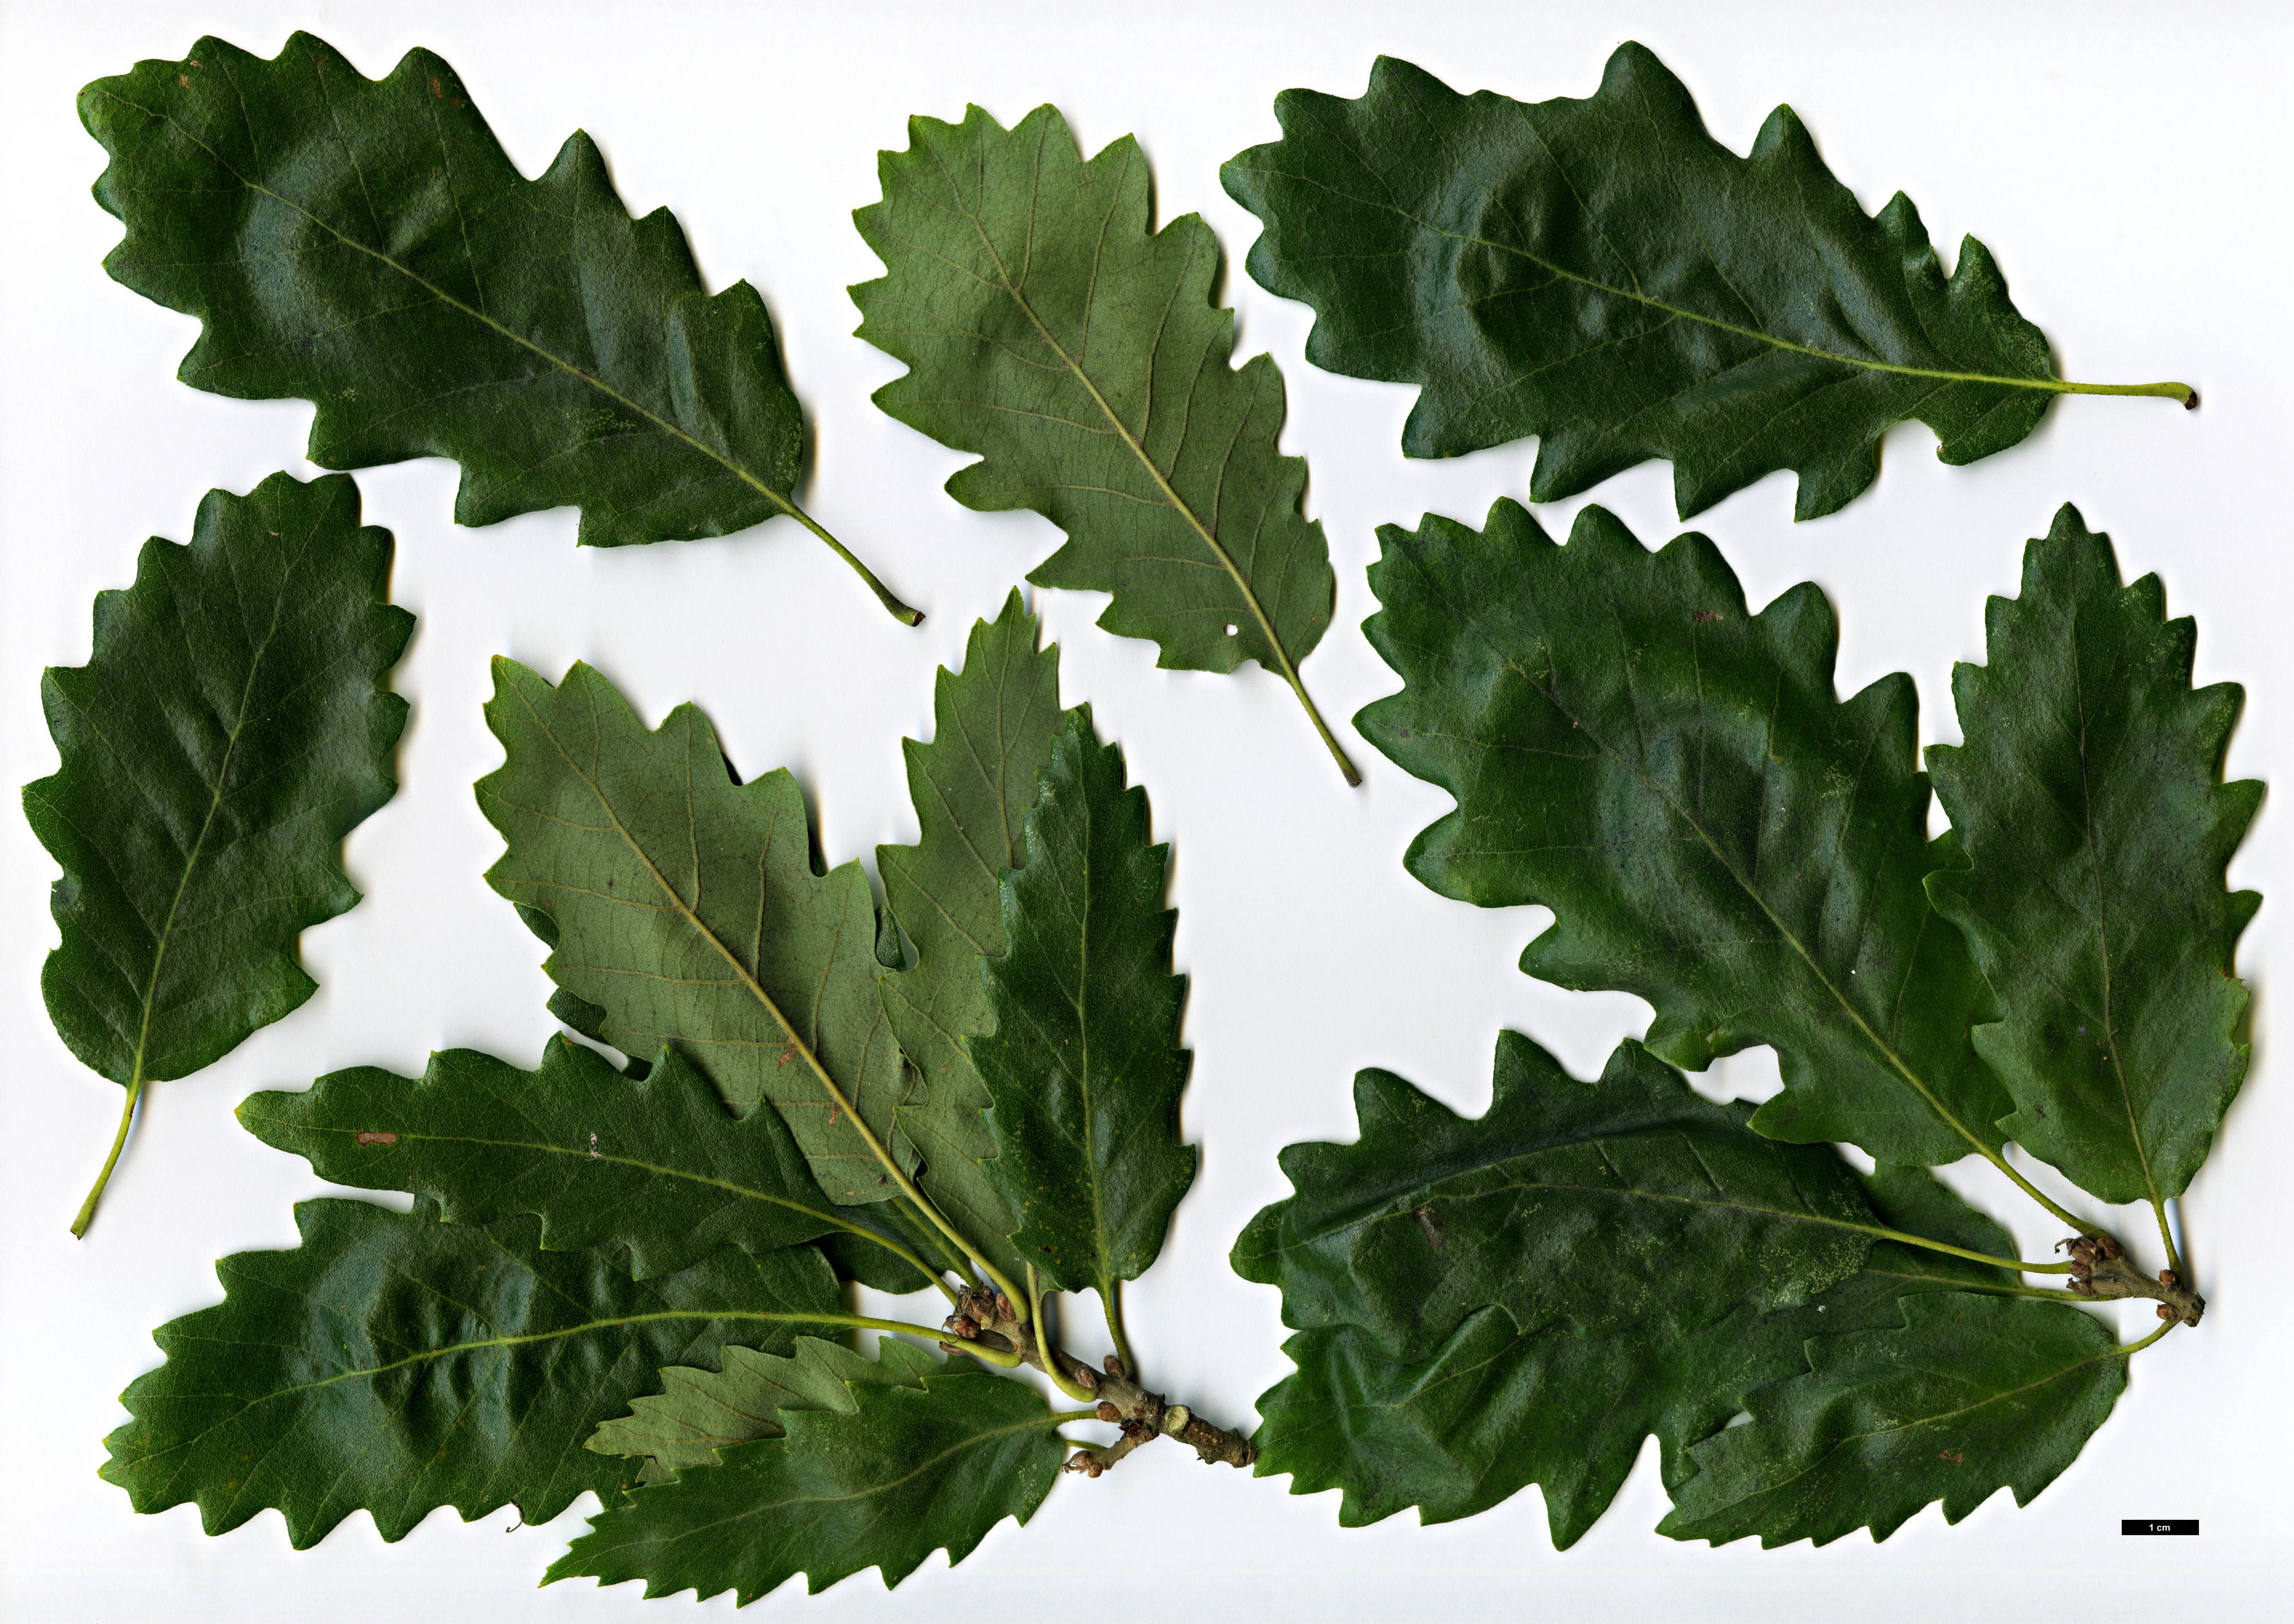 High resolution image: Family: Fagaceae - Genus: Quercus - Taxon: ×crenata - SpeciesSub: 'Lucombeana' (Q.cerris × Q.suber)